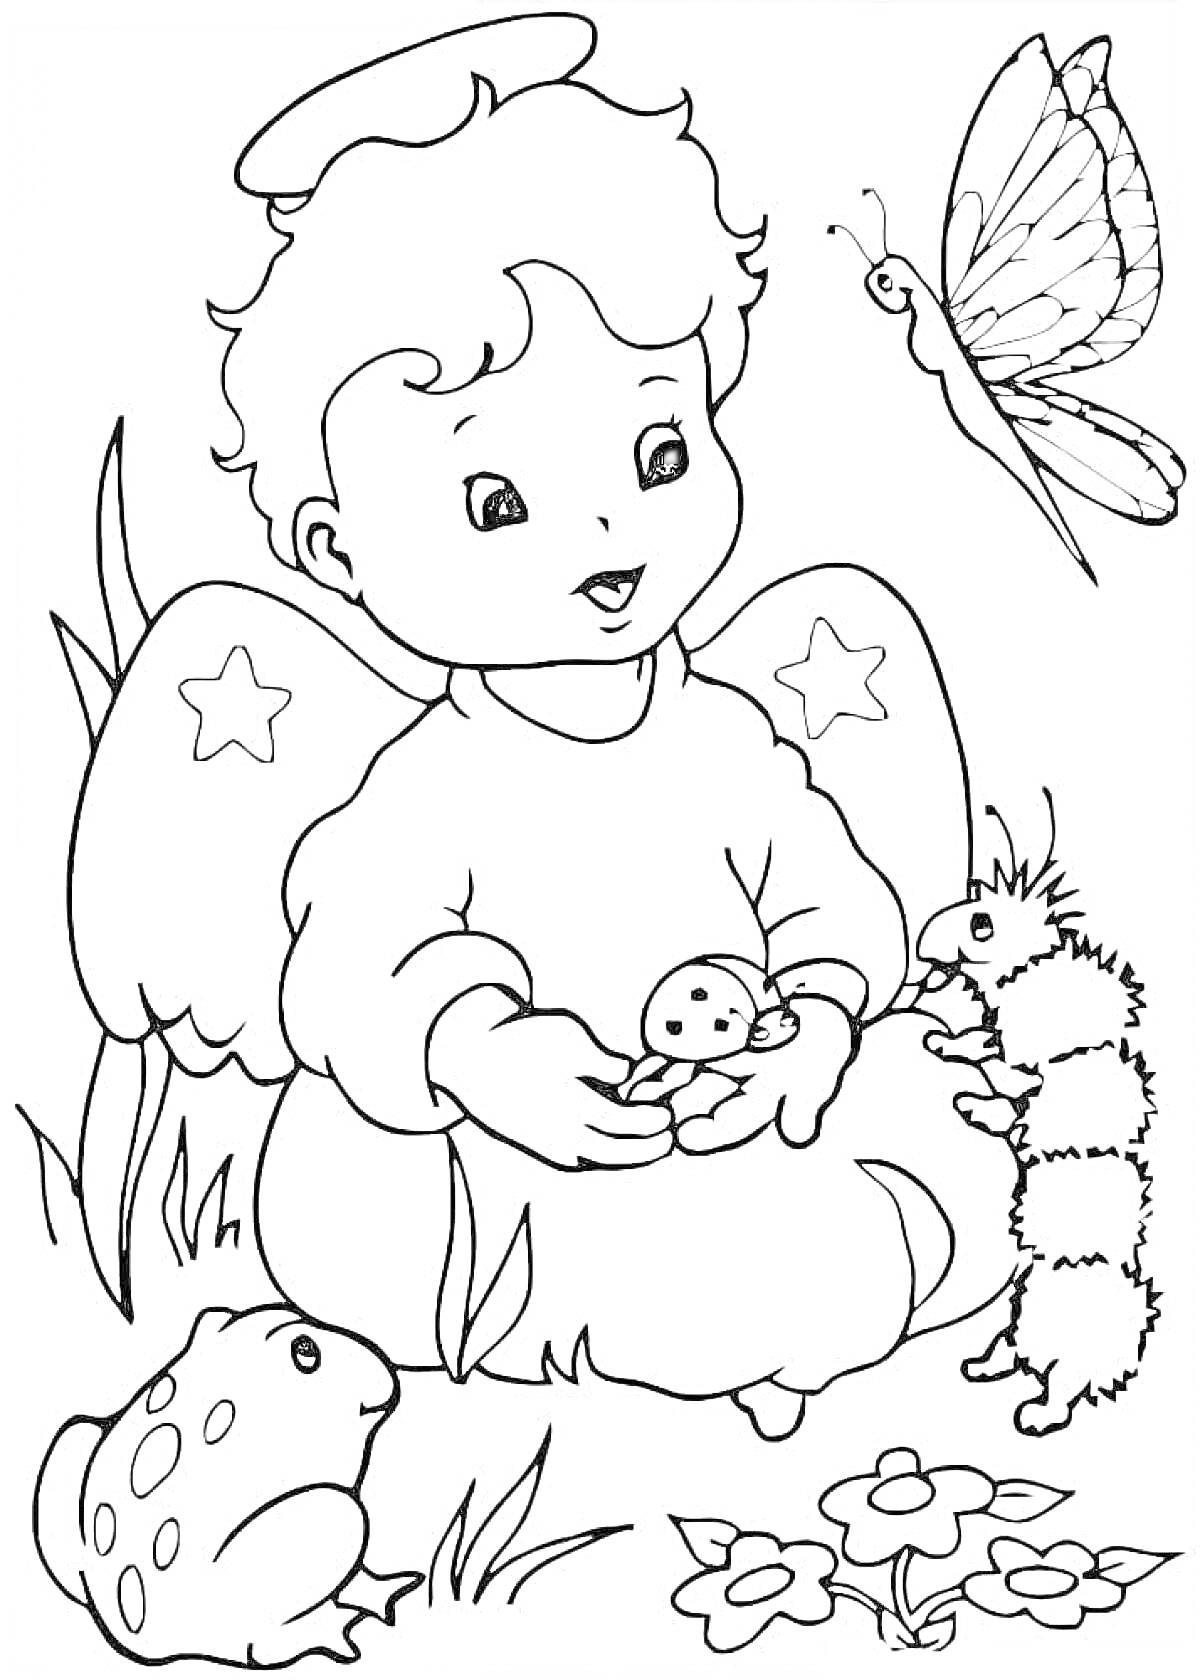 Раскраска Ангелочек с крыльями и звездами, держащий божью коровку, рядом игрушечная гусеница, лягушка и бабочка на цветах.